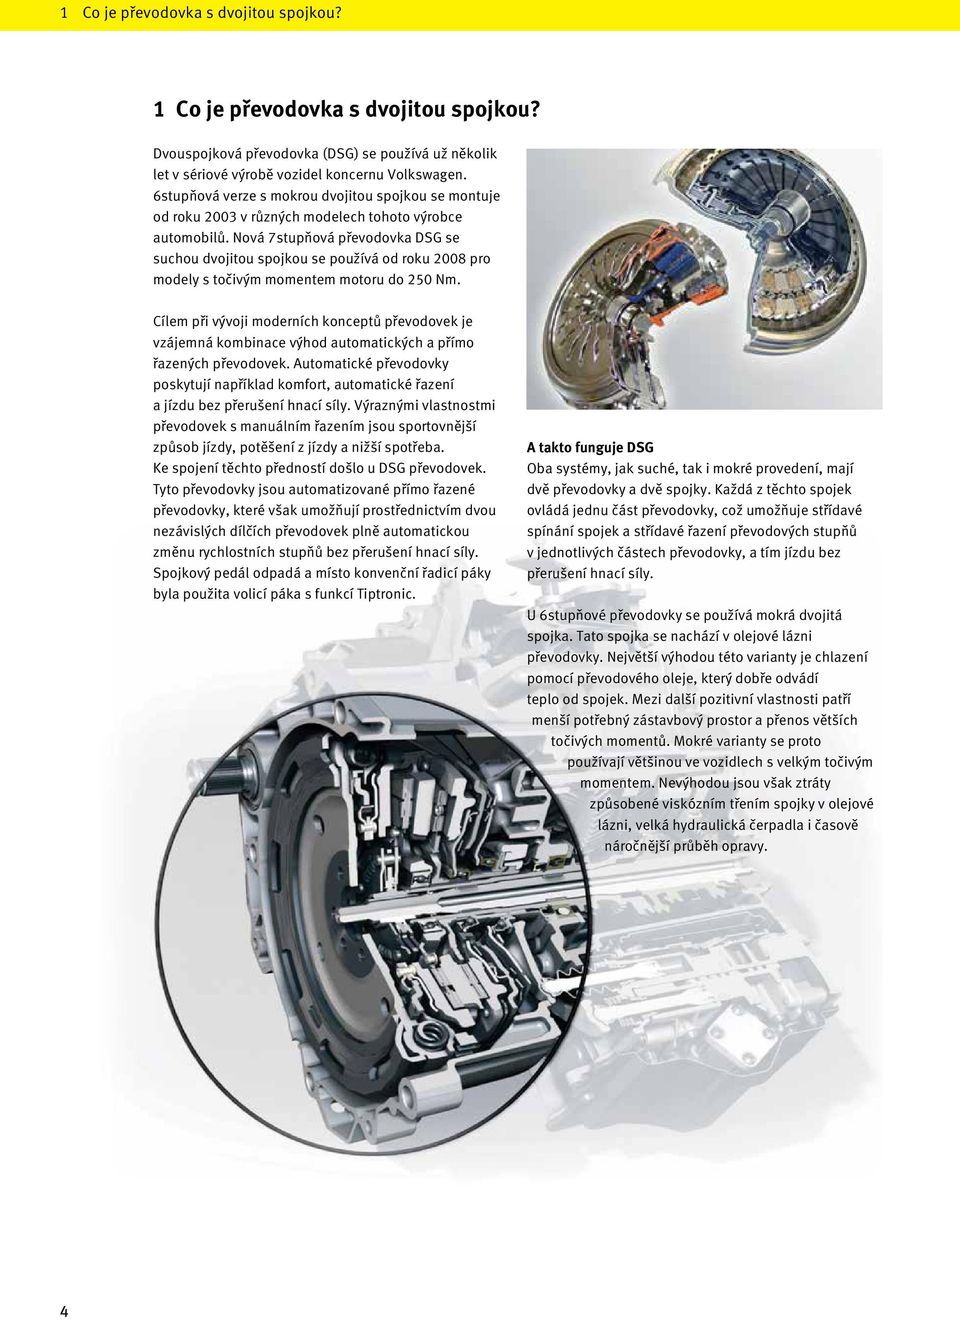 Nová 7stupňová převodovka DSG se suchou dvojitou spojkou se používá od roku 2008 pro modely s točivým momentem motoru do 250 Nm.